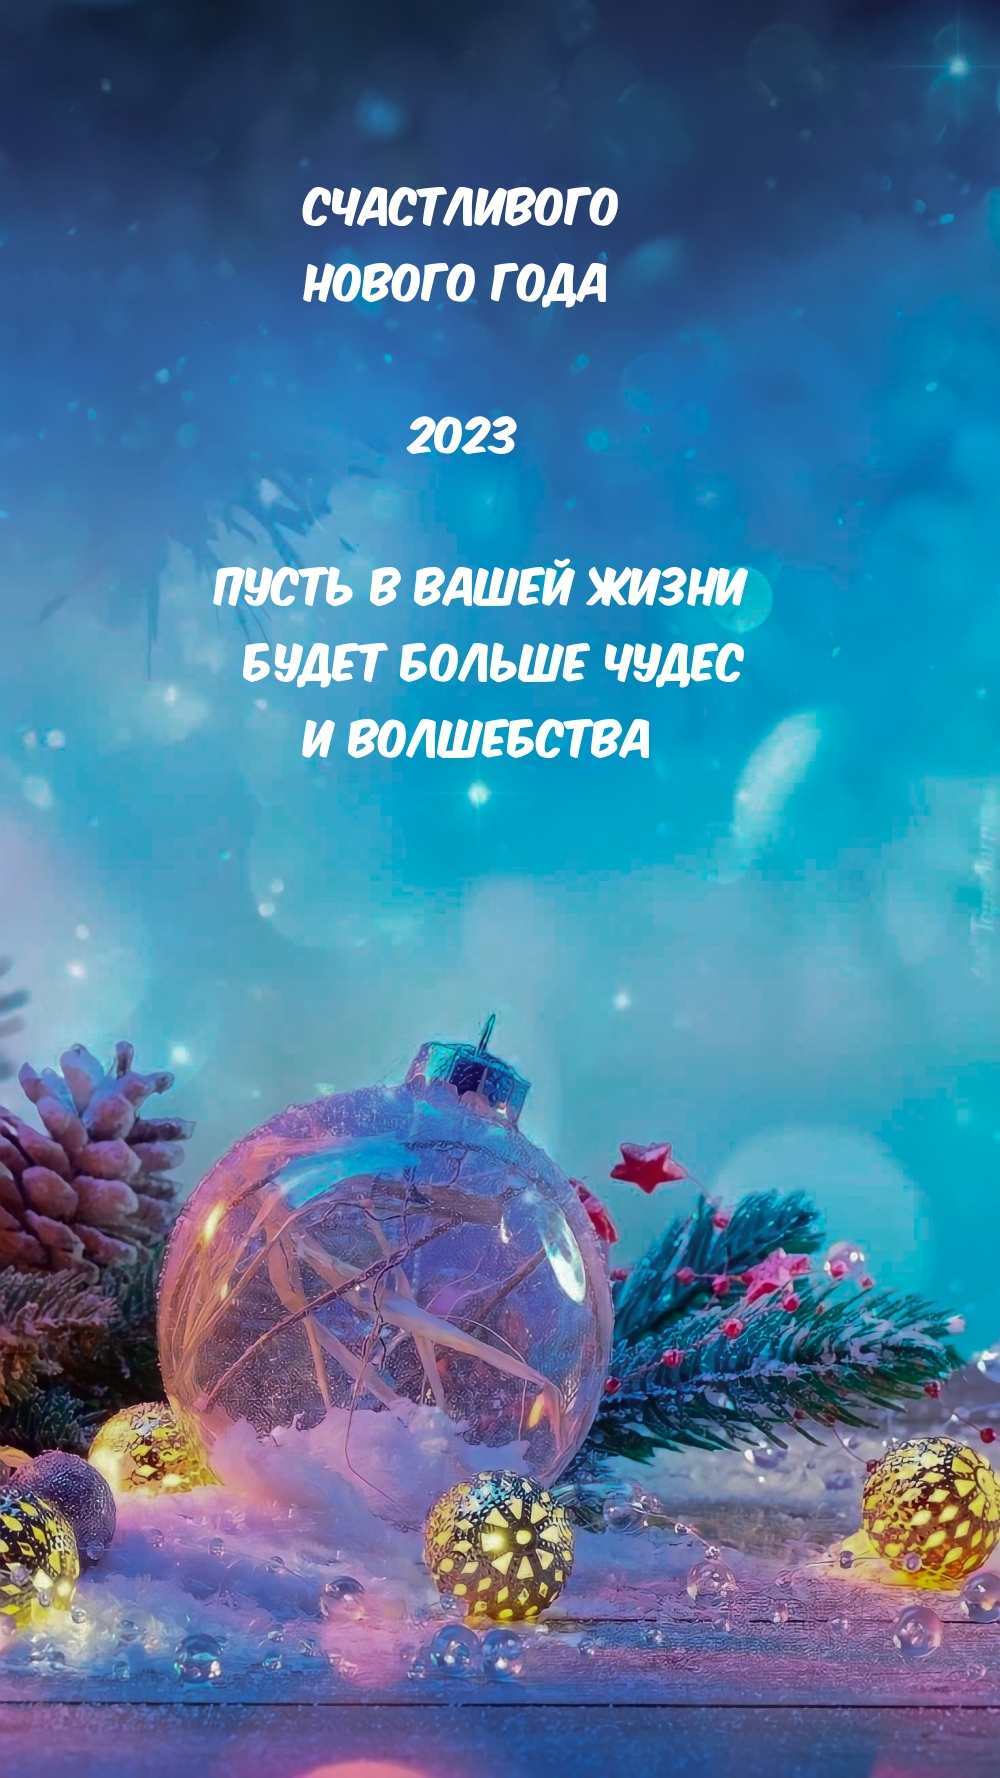 Пусть следующий год. Новогодние картинки. Изображения с новым годом 2023. Счастливого нового года 2023 картинки. Надписи для нового года 2023.